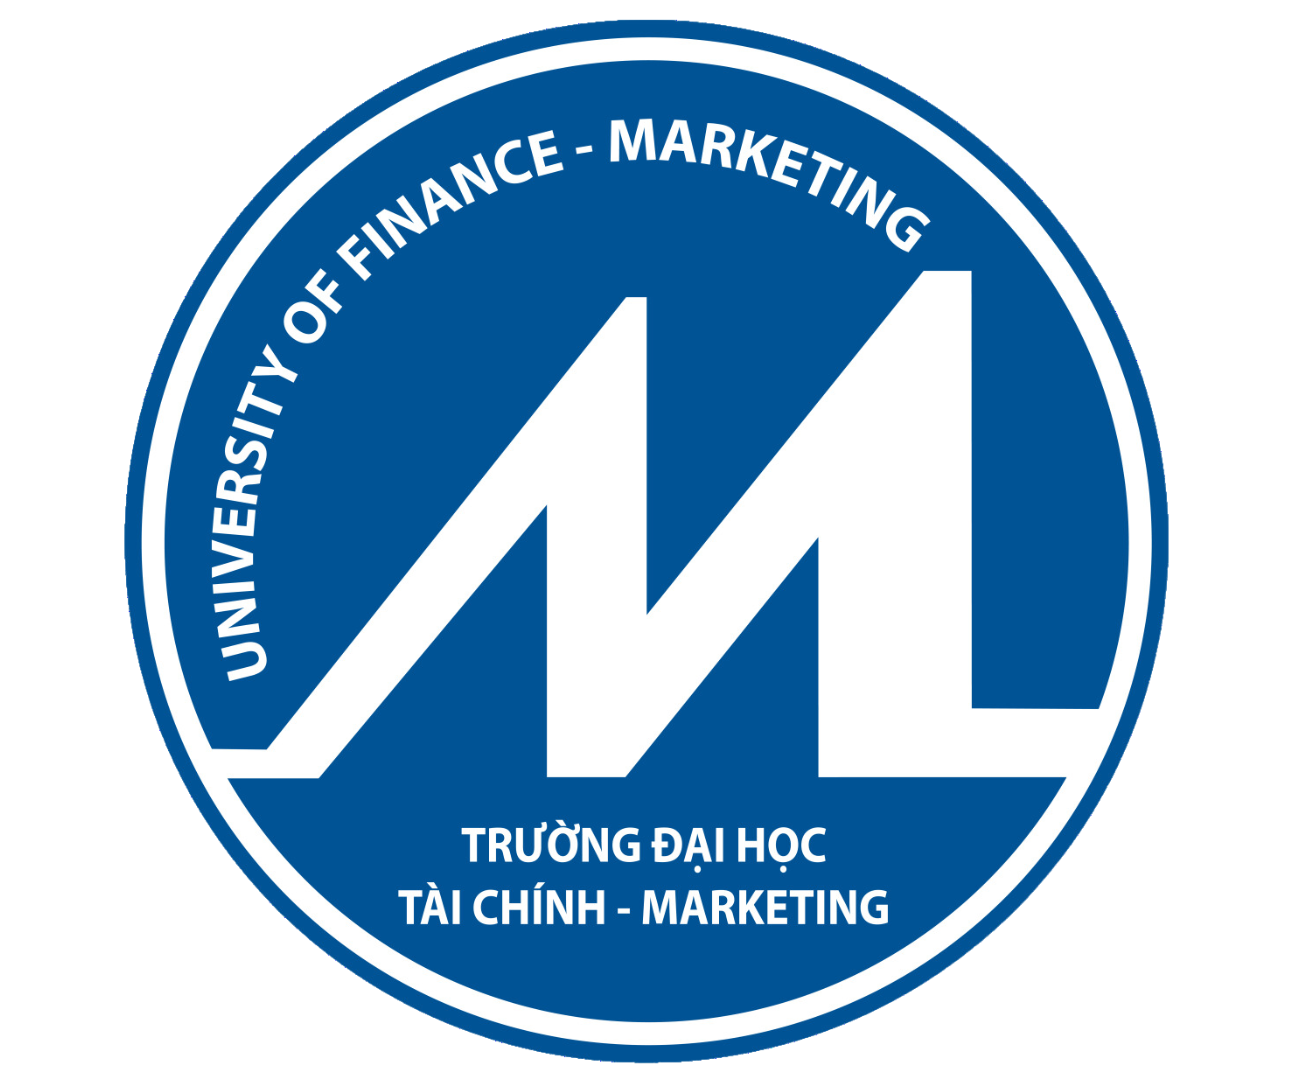 Trường Đại học Tài chính - Marketing